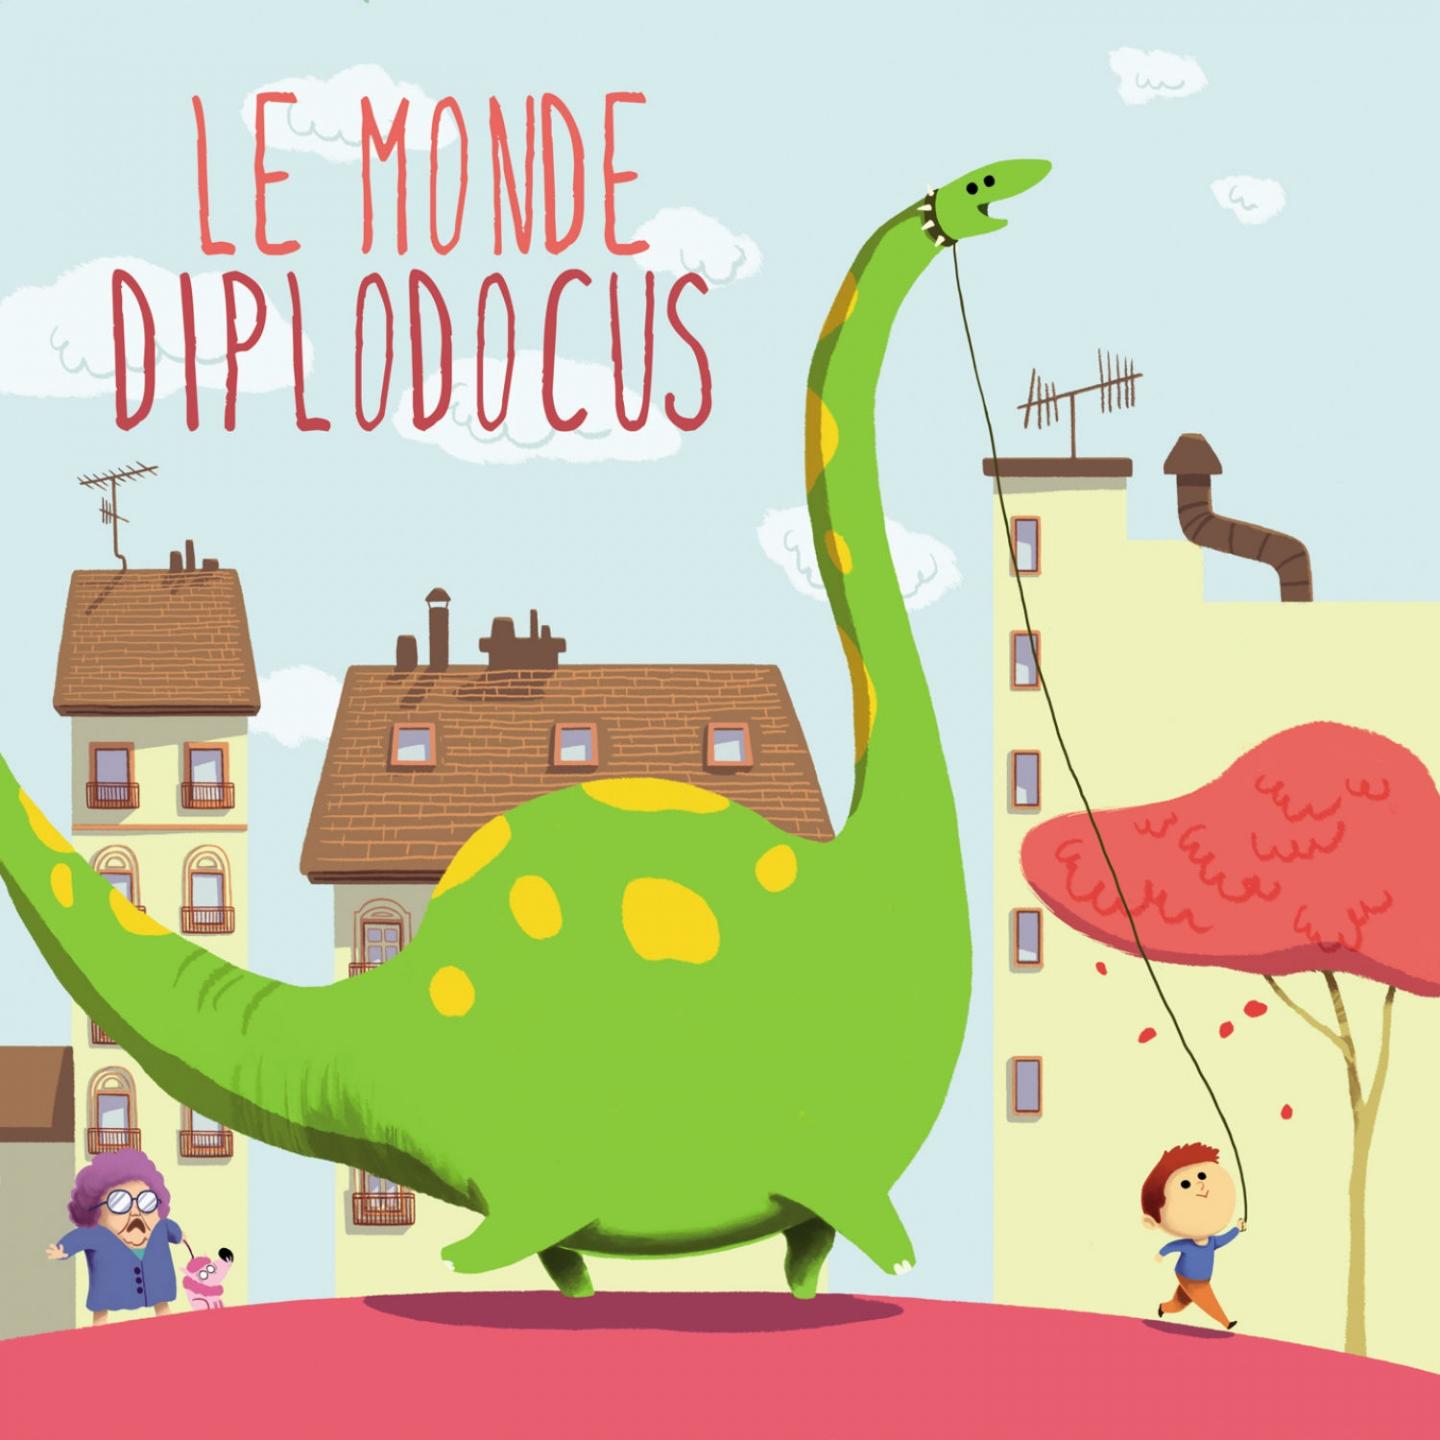 Le monde diplodocus